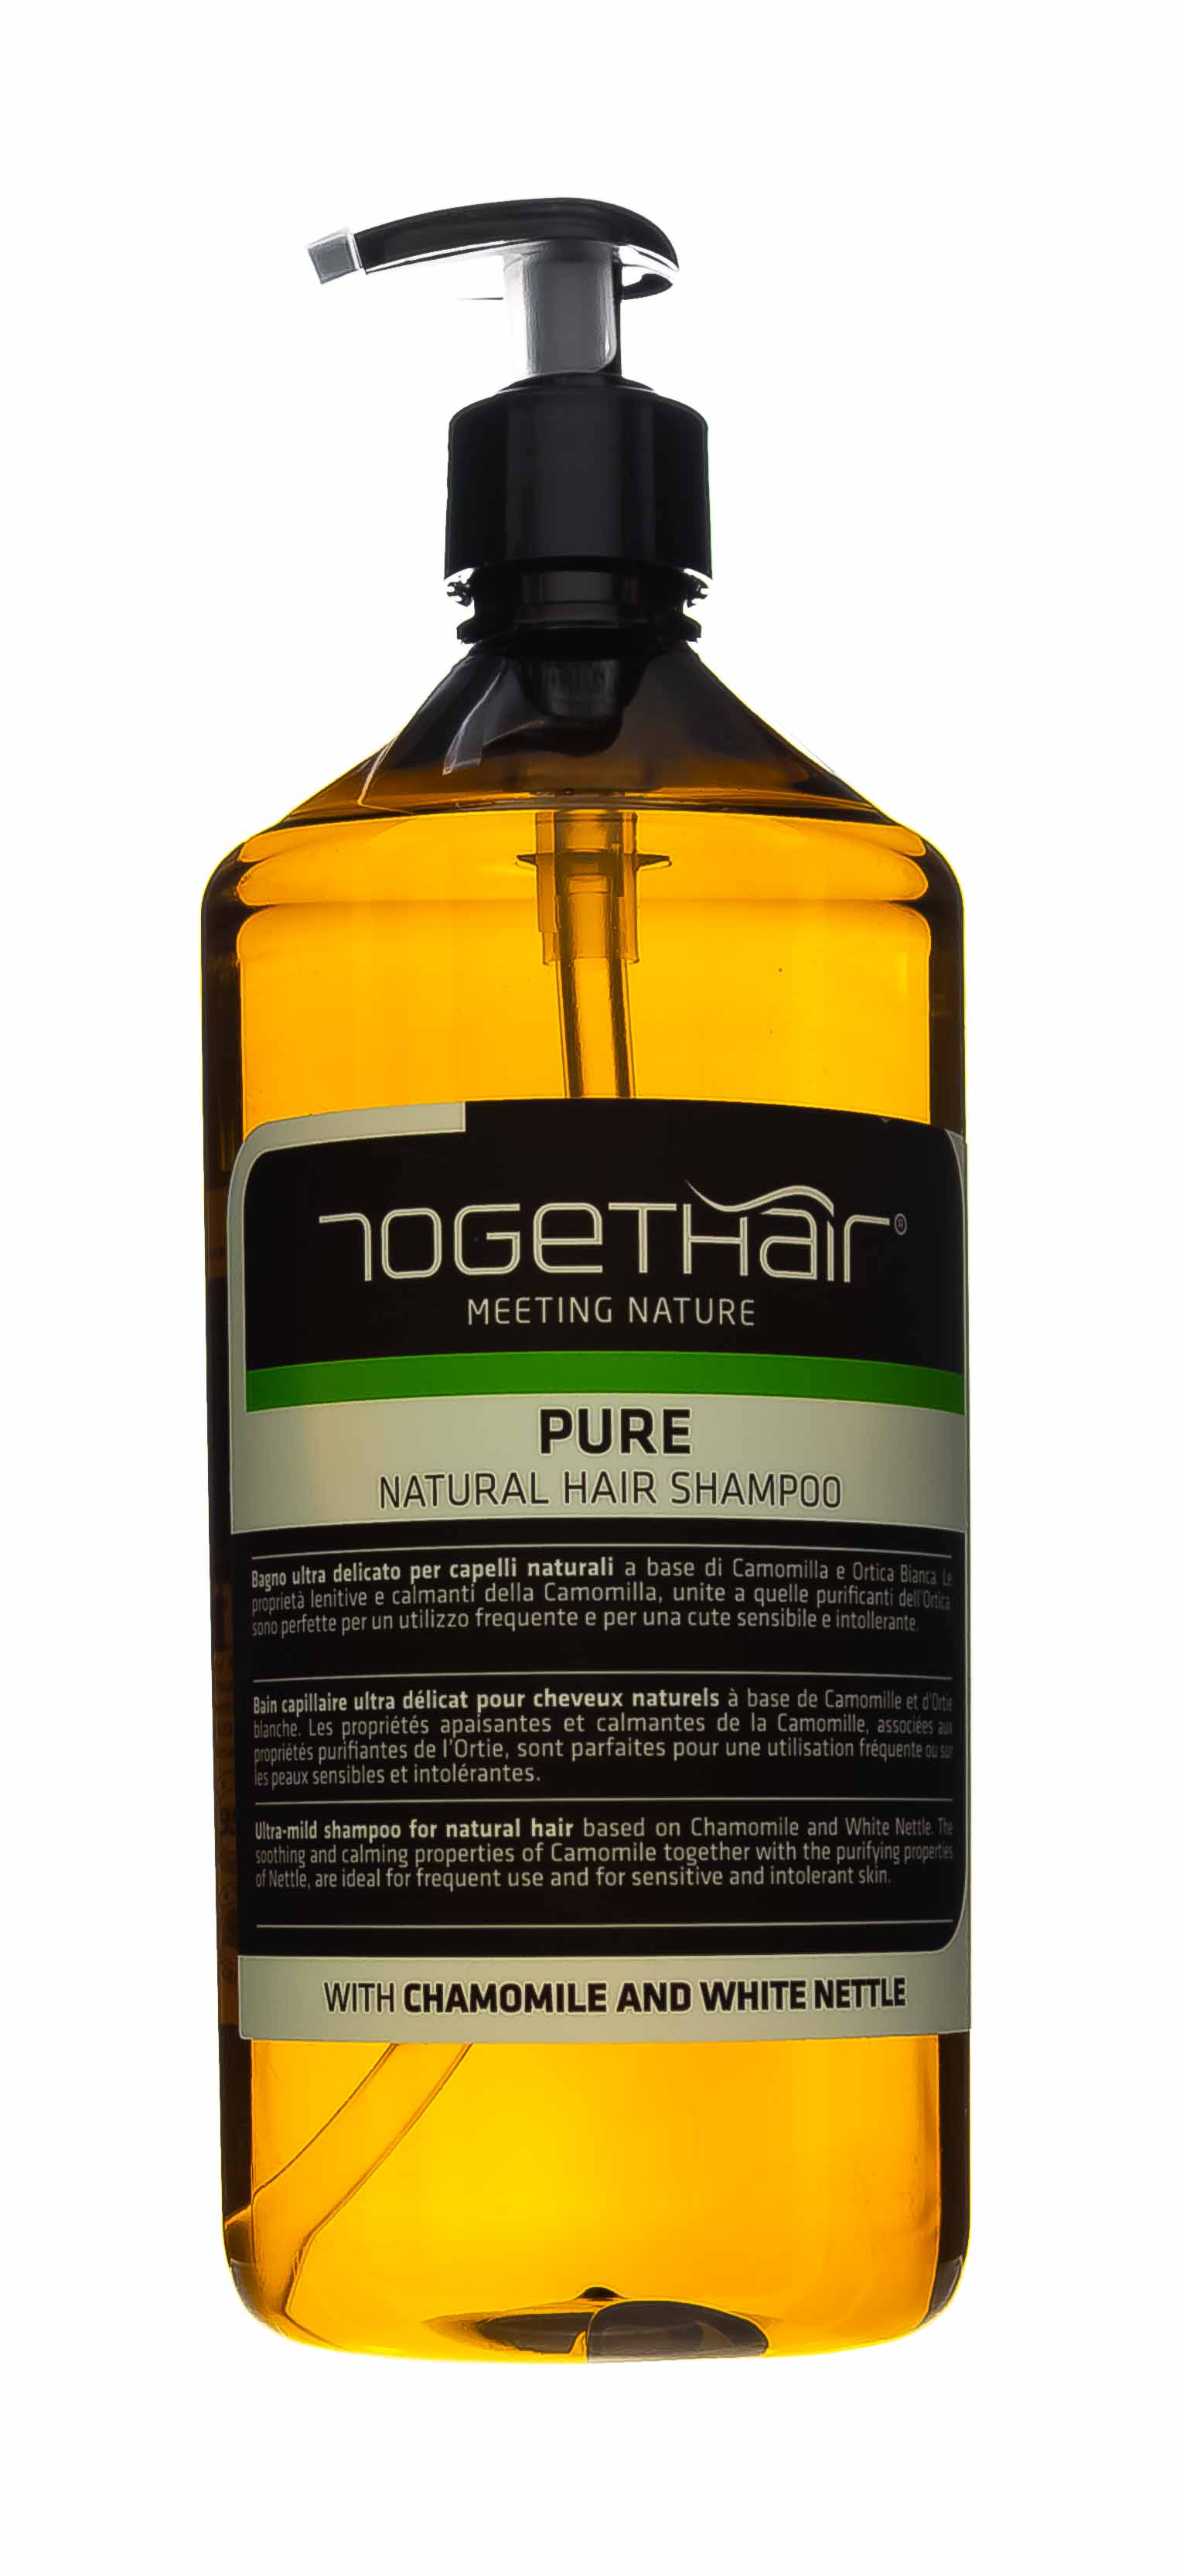 Togethair Ультра-мягкий шампунь для натуральных волос, 1000 мл (Togethair, Pure)